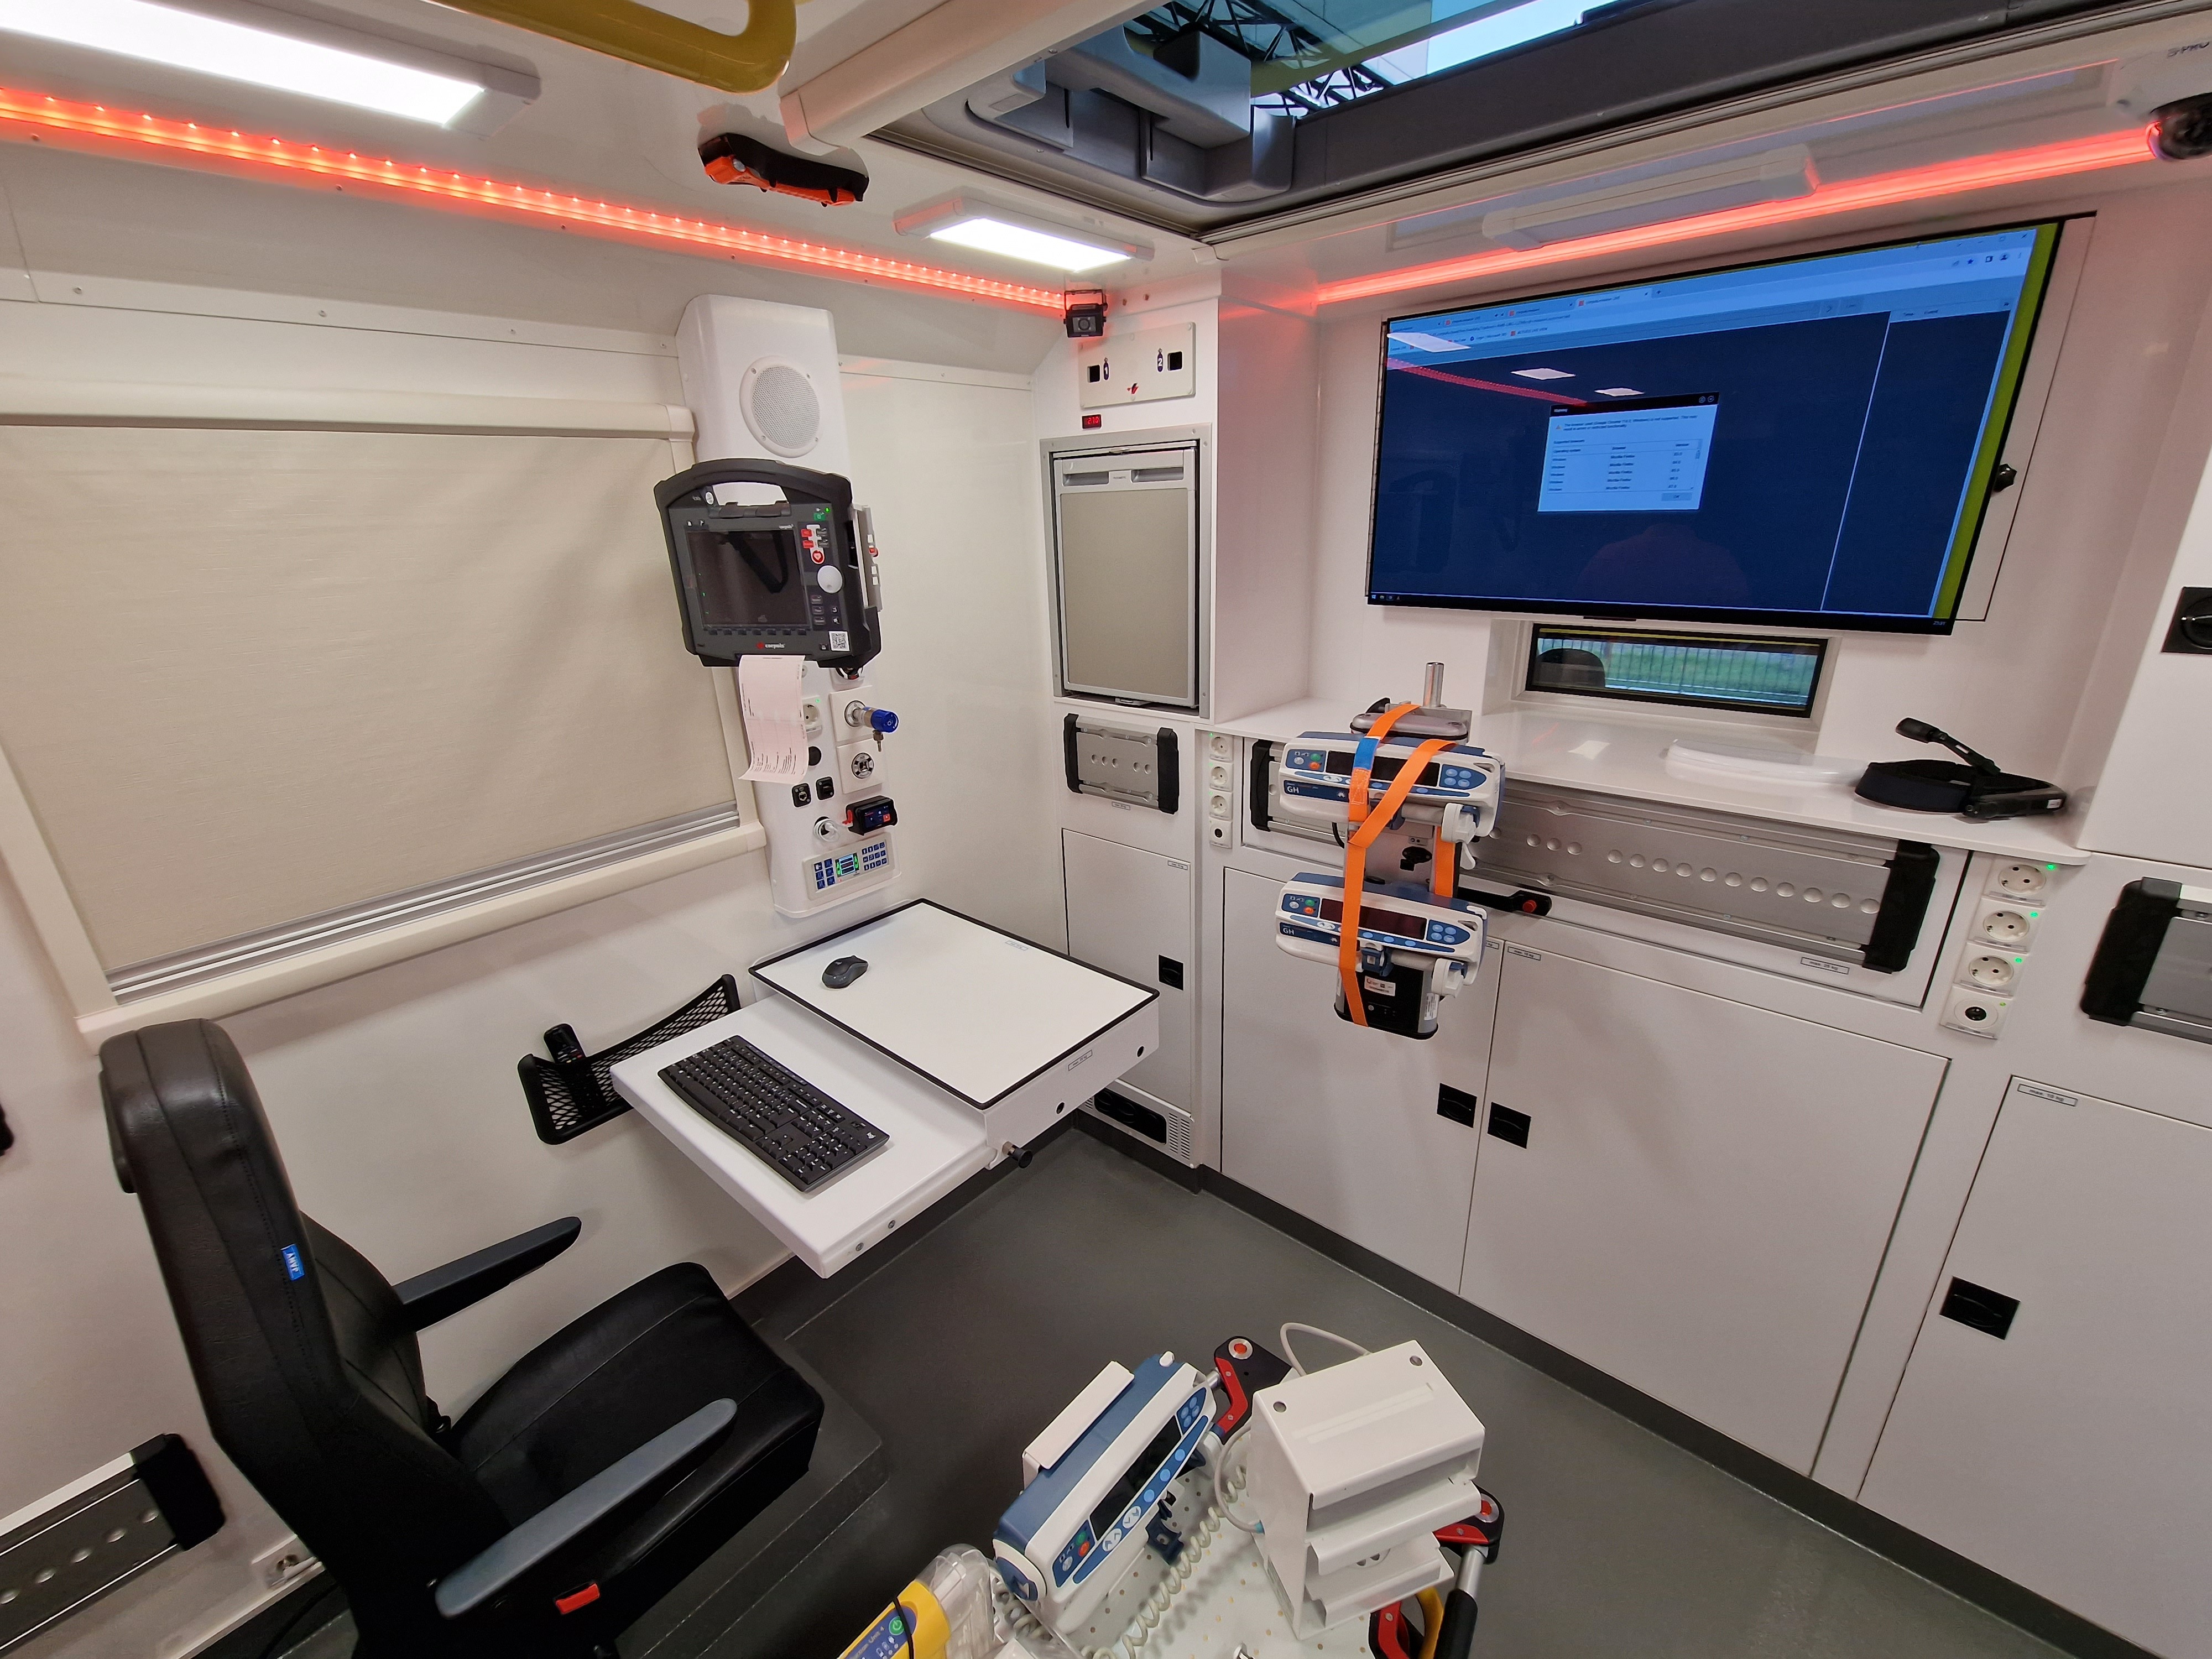 Nouvelle ambulance haute technologie pour l’UZ Brussel  8tcb